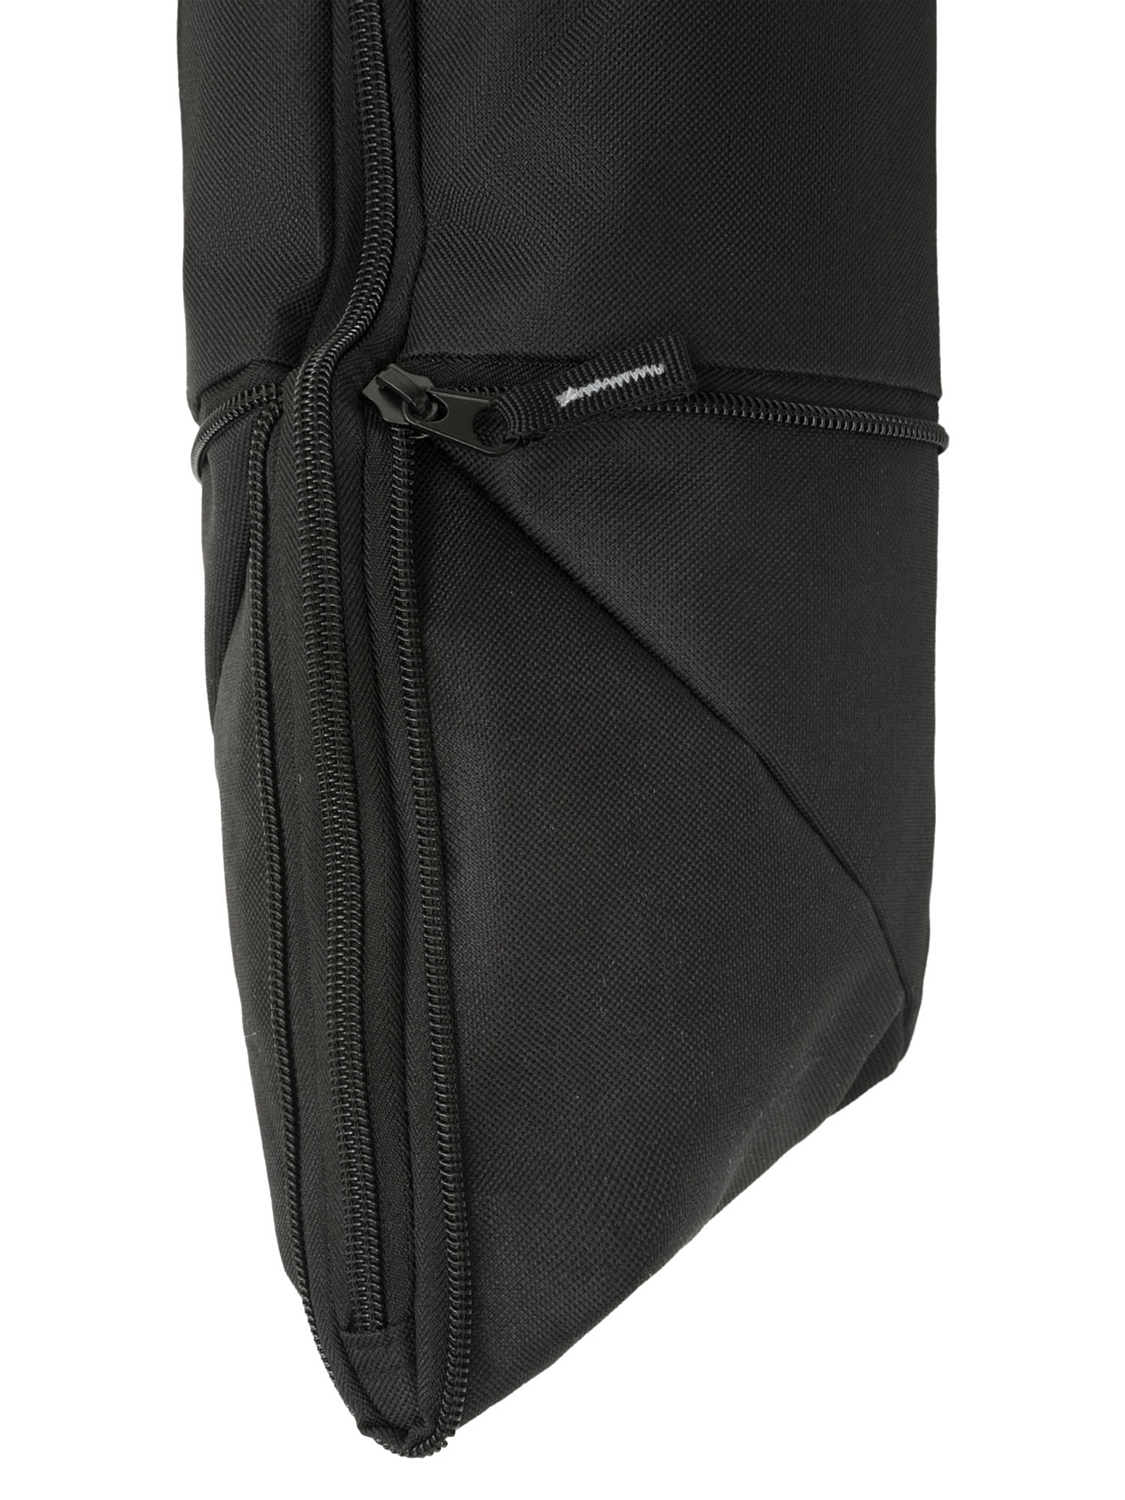 Чехол для горных лыж BLIZZARD Ski bag for 1 pair 160-180 cm Black/Silver